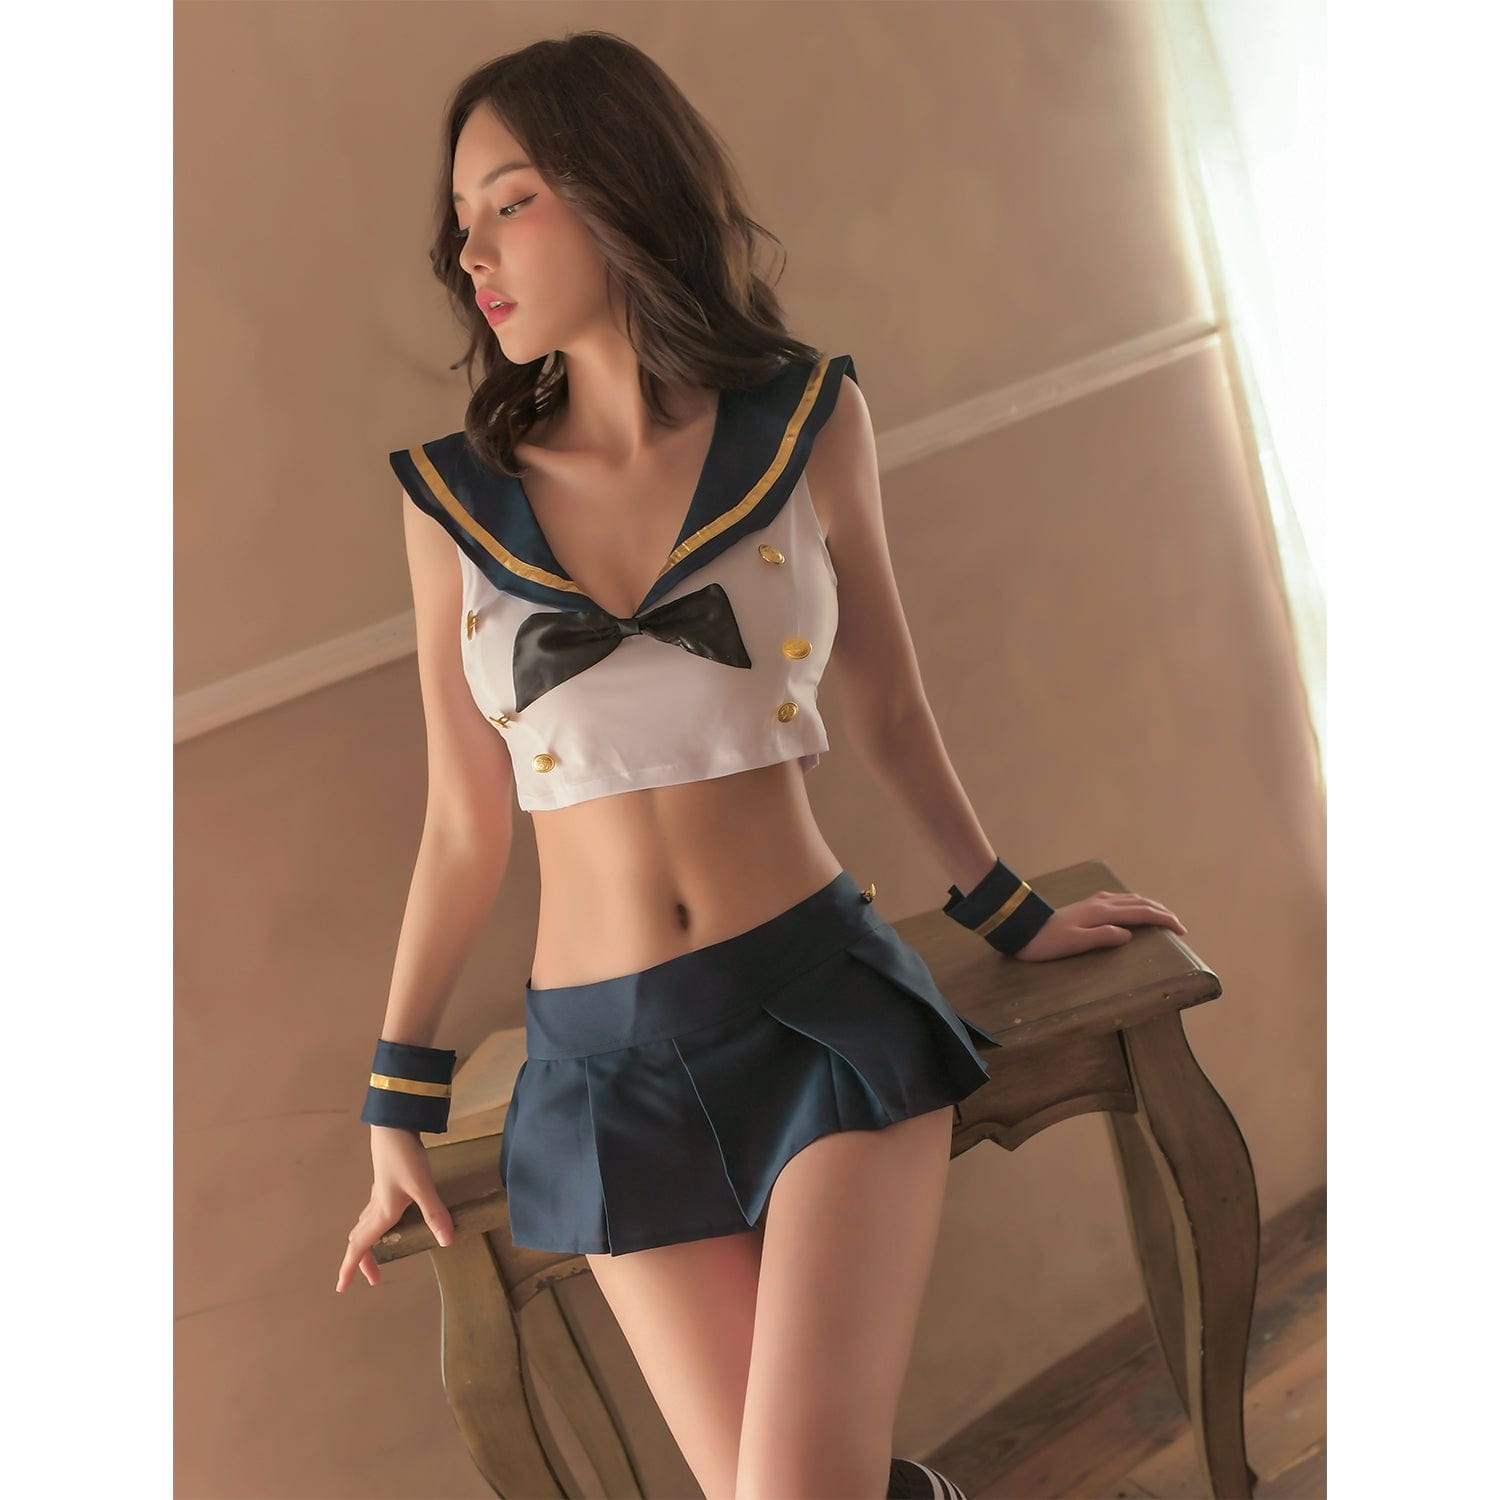 Garden - Reiwa Latest Suke Number One Sailor Costume (Black/White) Costumes 622420030 CherryAffairs